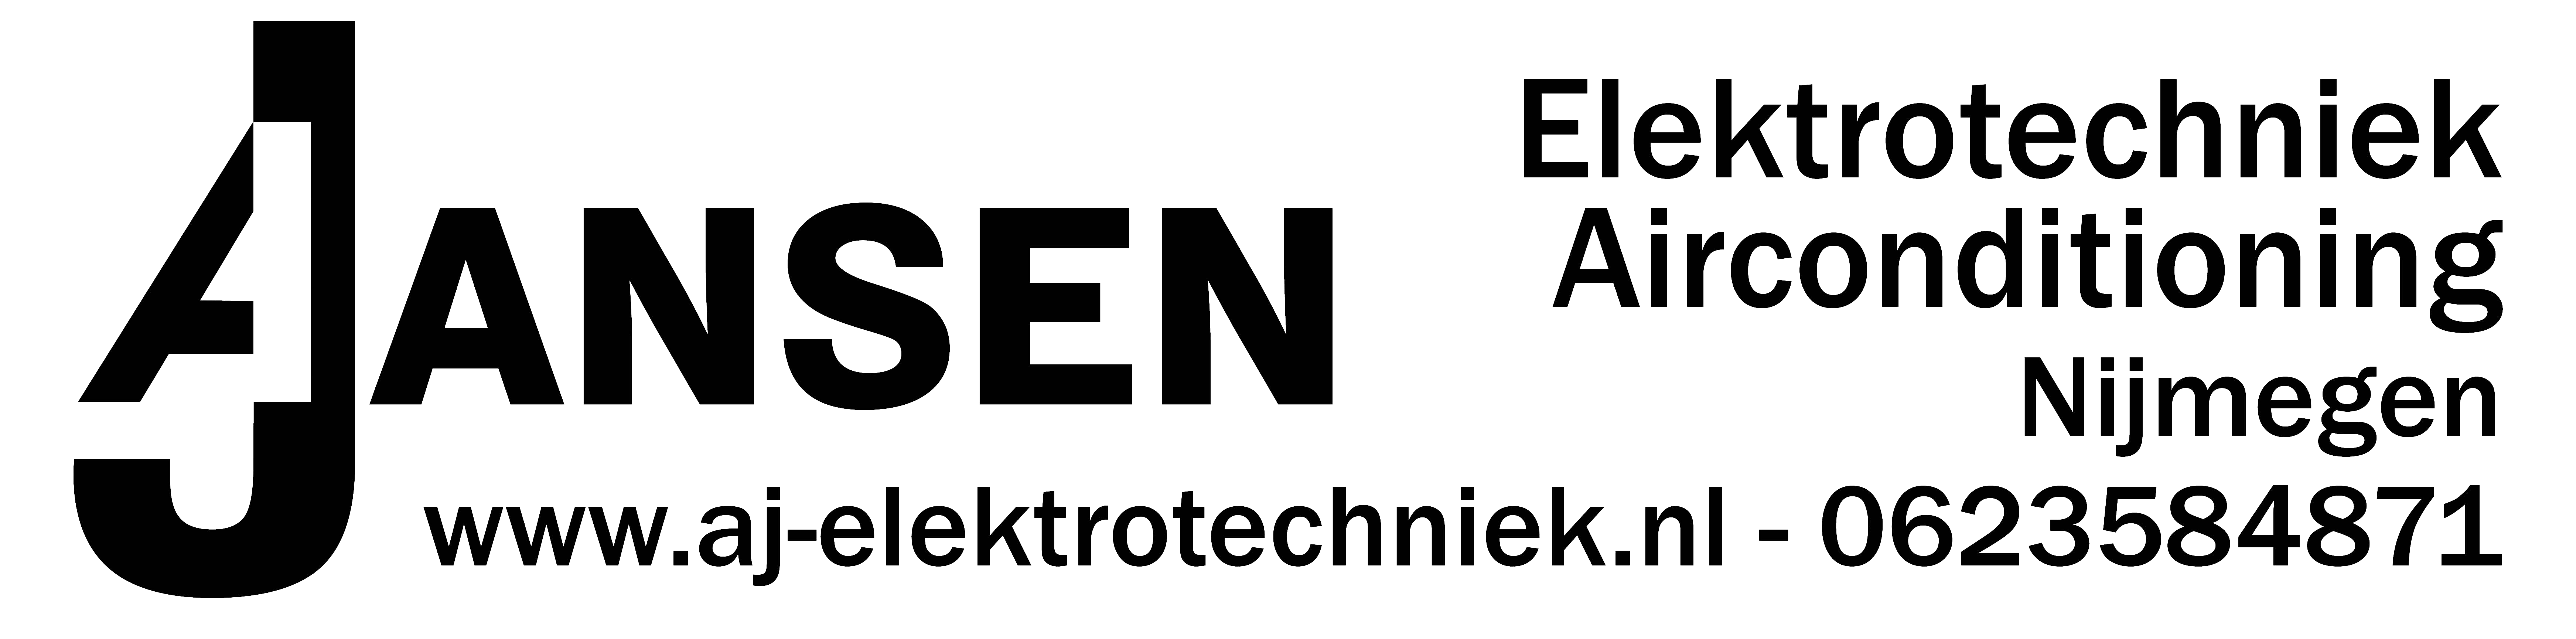 images/sponsor/Logo Jansen Elektrotechniek.png